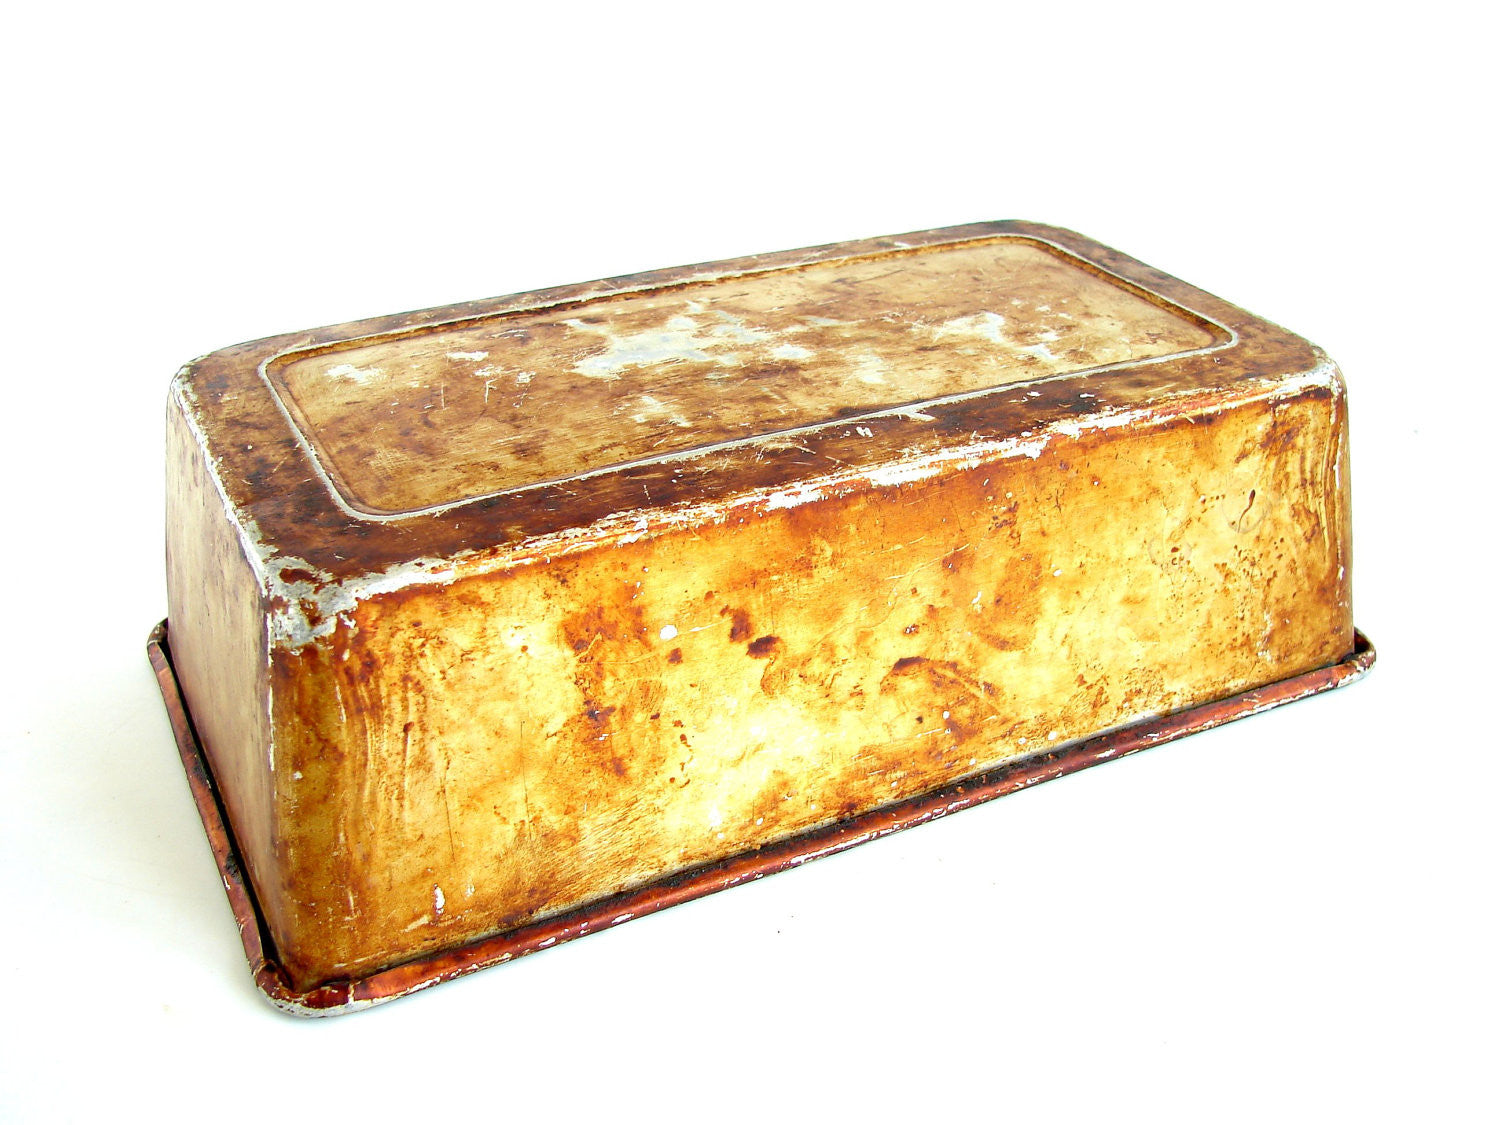 Vintage 8 Square Ekcology T630 Metal Bread Loaf Baking Pan With Hanger Hook  USA -  Denmark